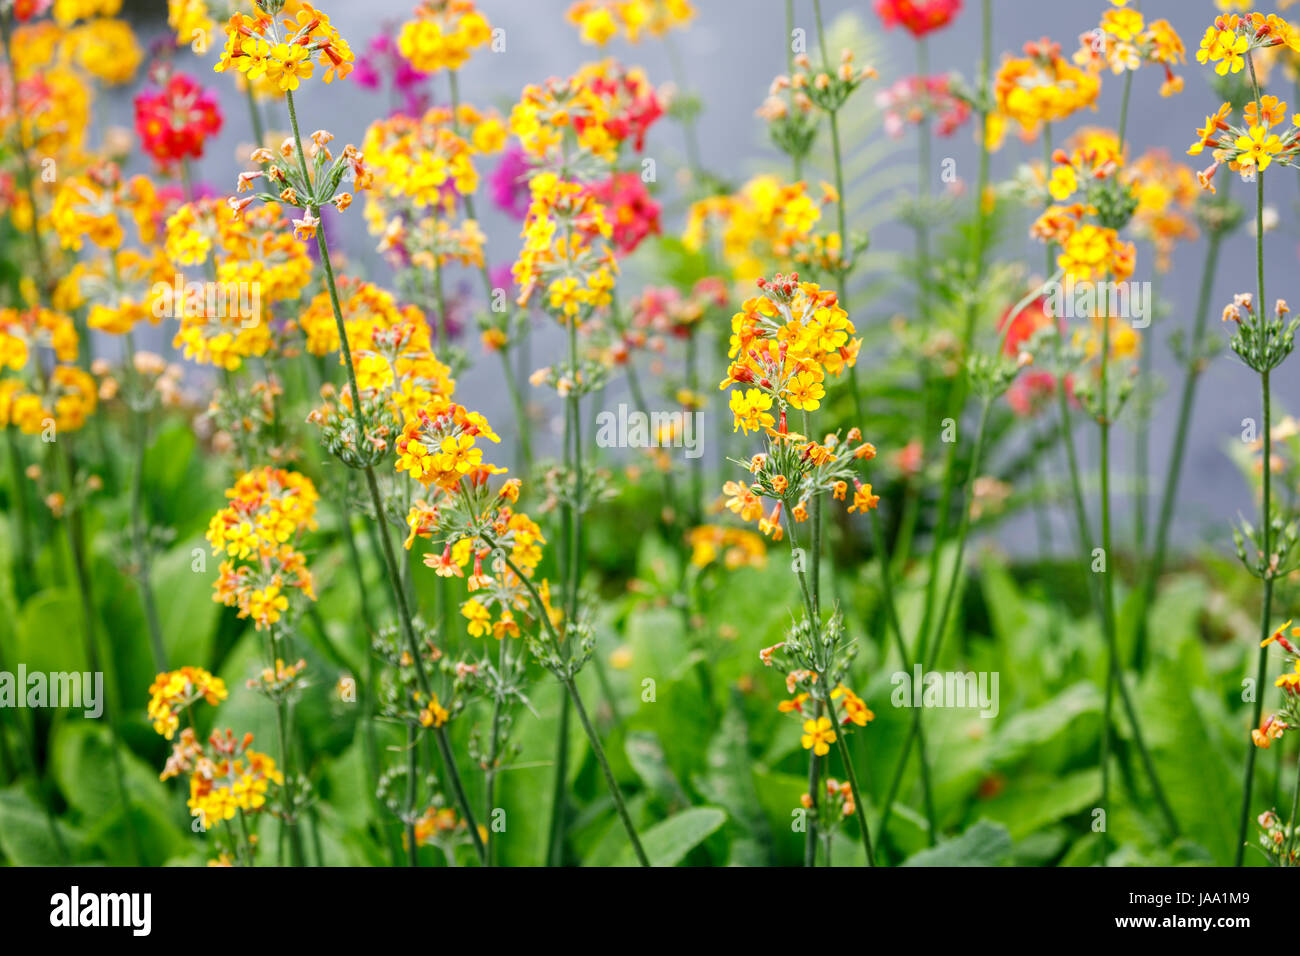 Chandelier colorés (candélabres) primevères en croissance, la floraison à la fin du printemps au début de l'été, RHS Gardens, Wisley, le sud-est de l'Angleterre, Royaume-Uni Banque D'Images